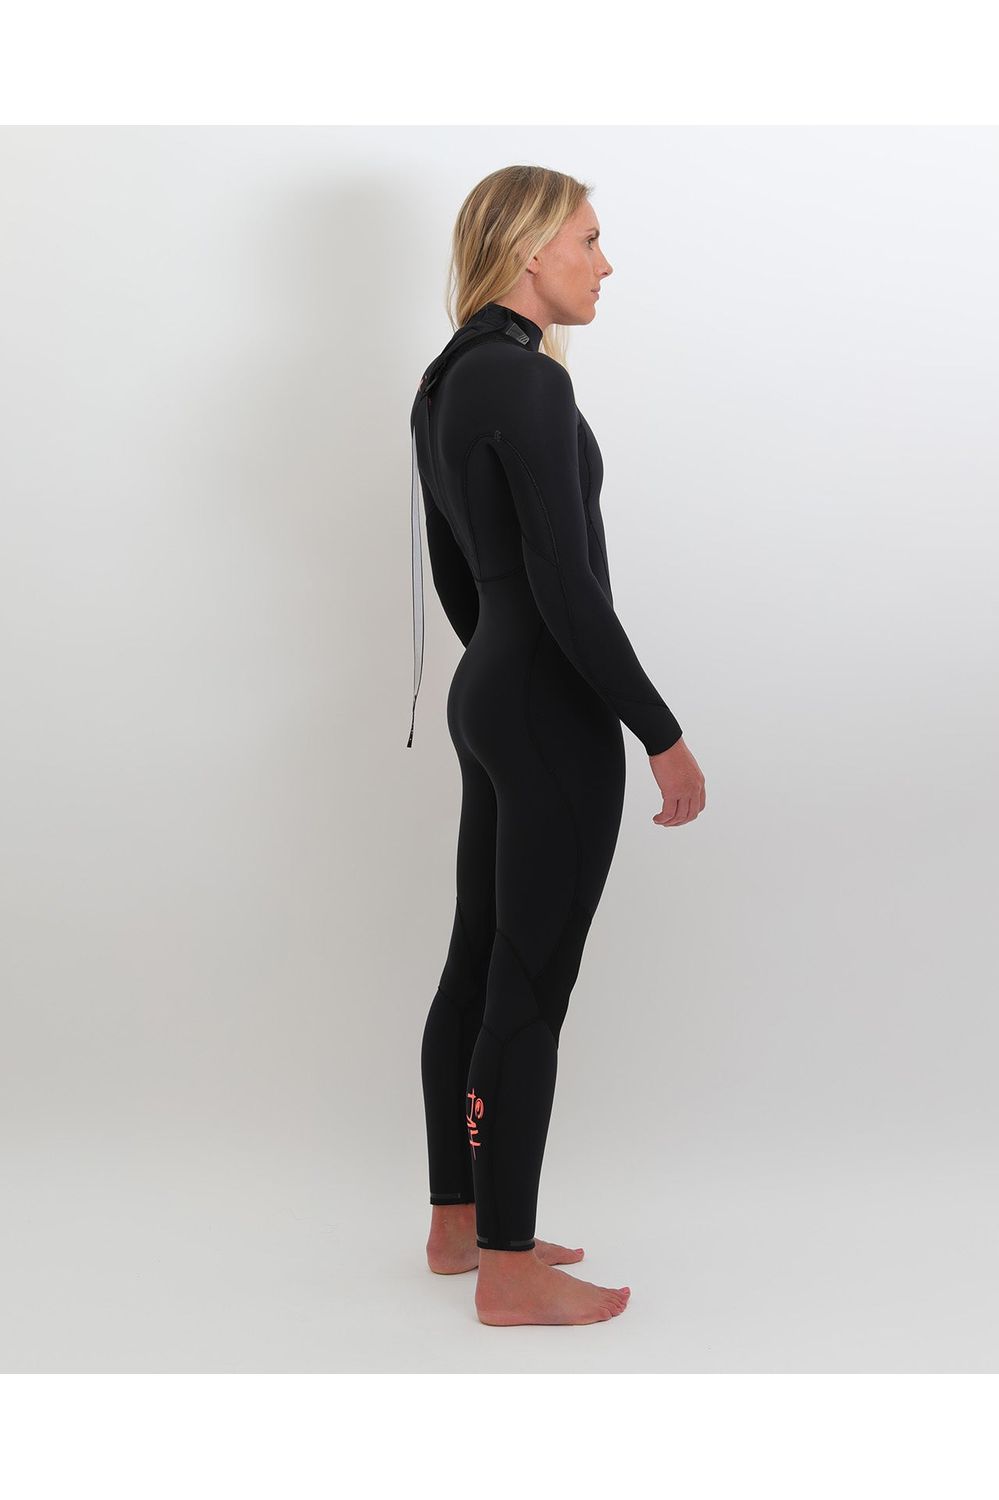 Tiki Ladies Zepha2 4/3 Wetsuit GBS - Back Zip - Black/Peach